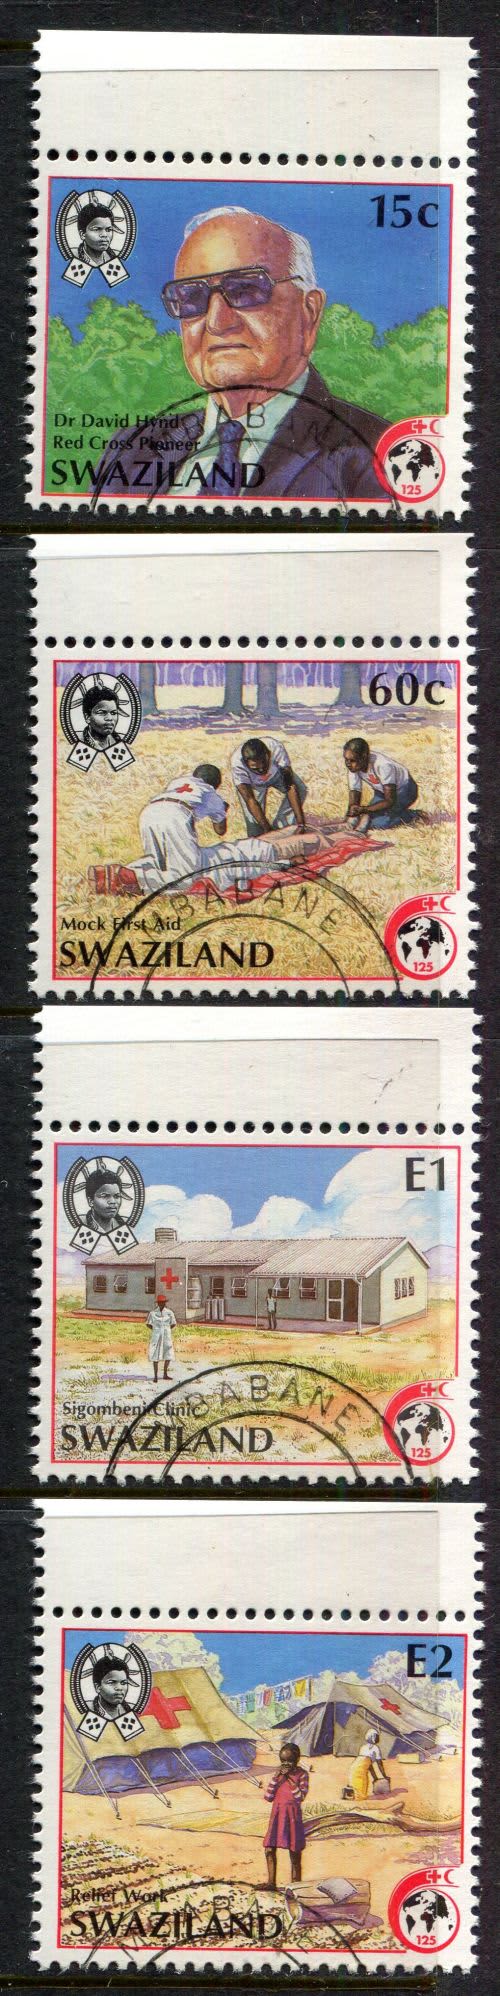 Swaziland - 1989 - Used(CTO)